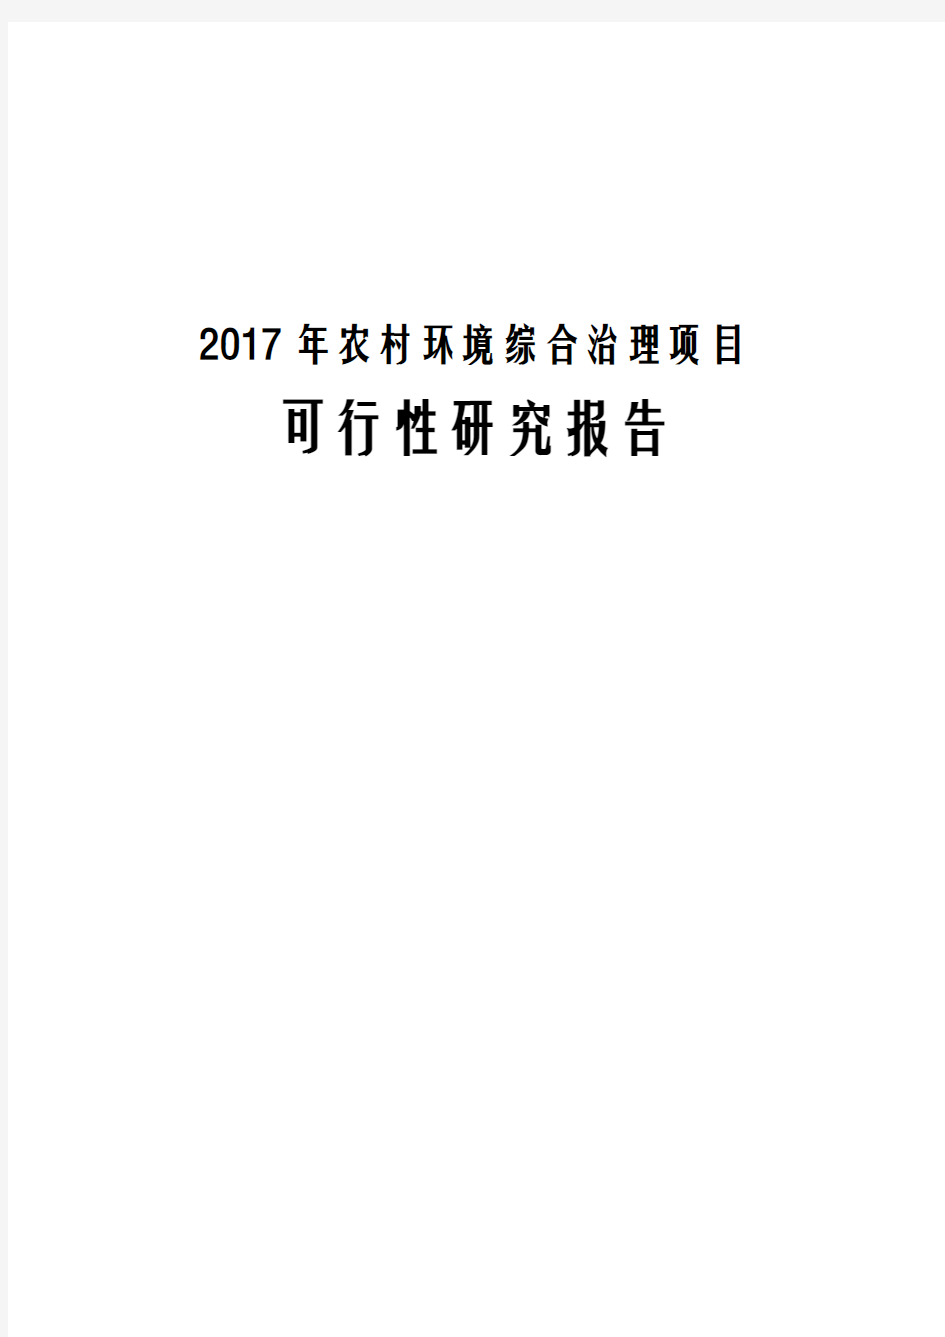 2017年农村环境综合治理项目可行性研究报告